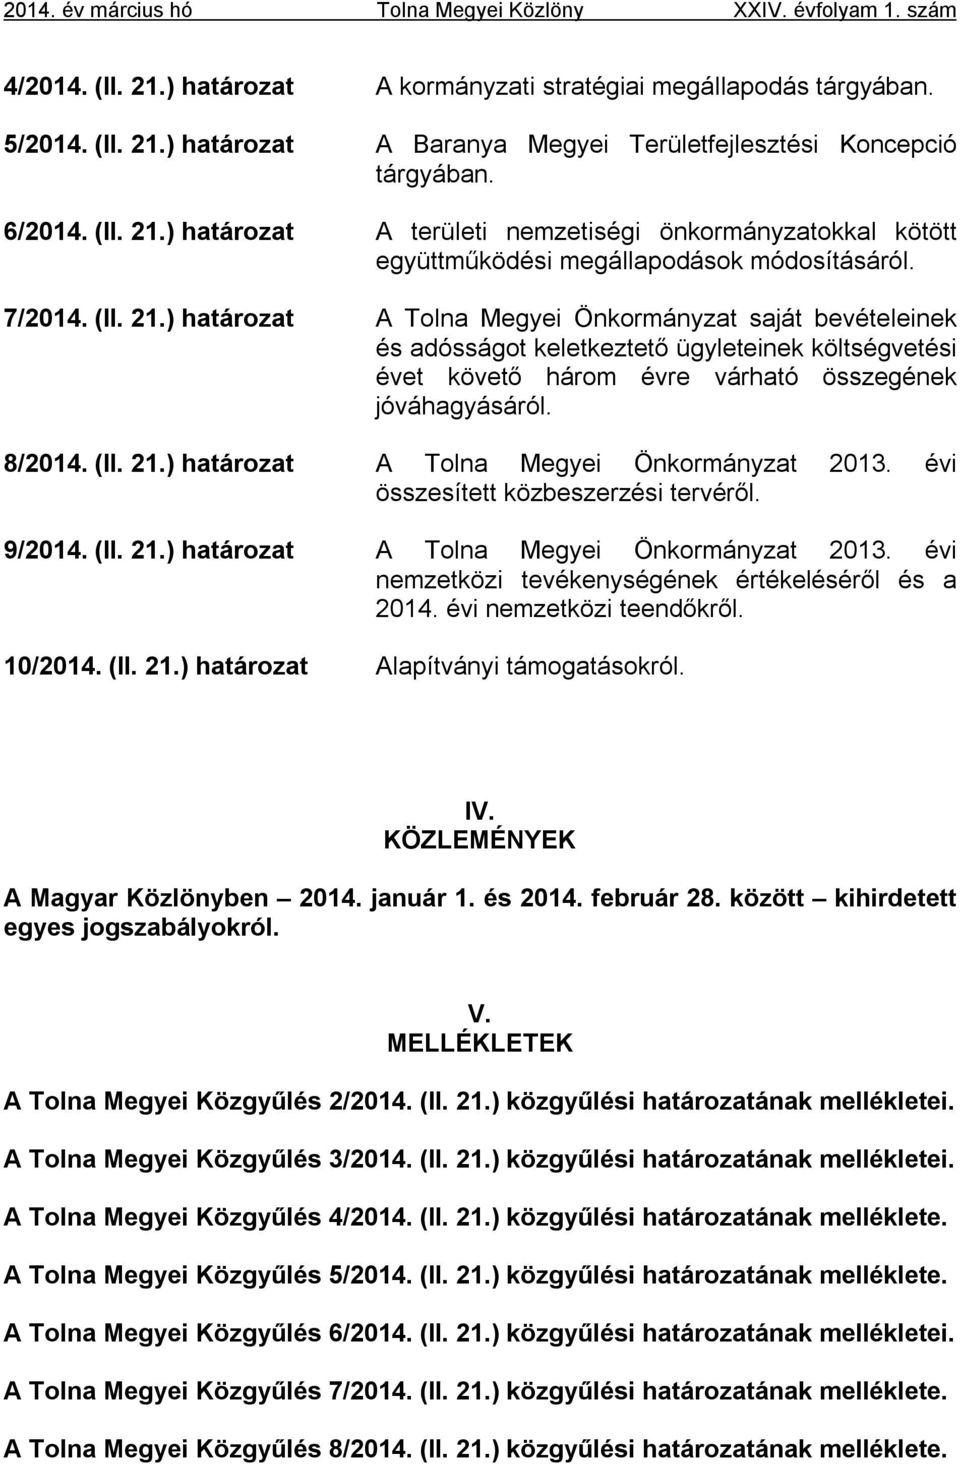 8/2014. (II. 21.) határozat A Tolna Megyei Önkormányzat 2013. évi összesített közbeszerzési tervéről. 9/2014. (II. 21.) határozat A Tolna Megyei Önkormányzat 2013. évi nemzetközi tevékenységének értékeléséről és a 2014.